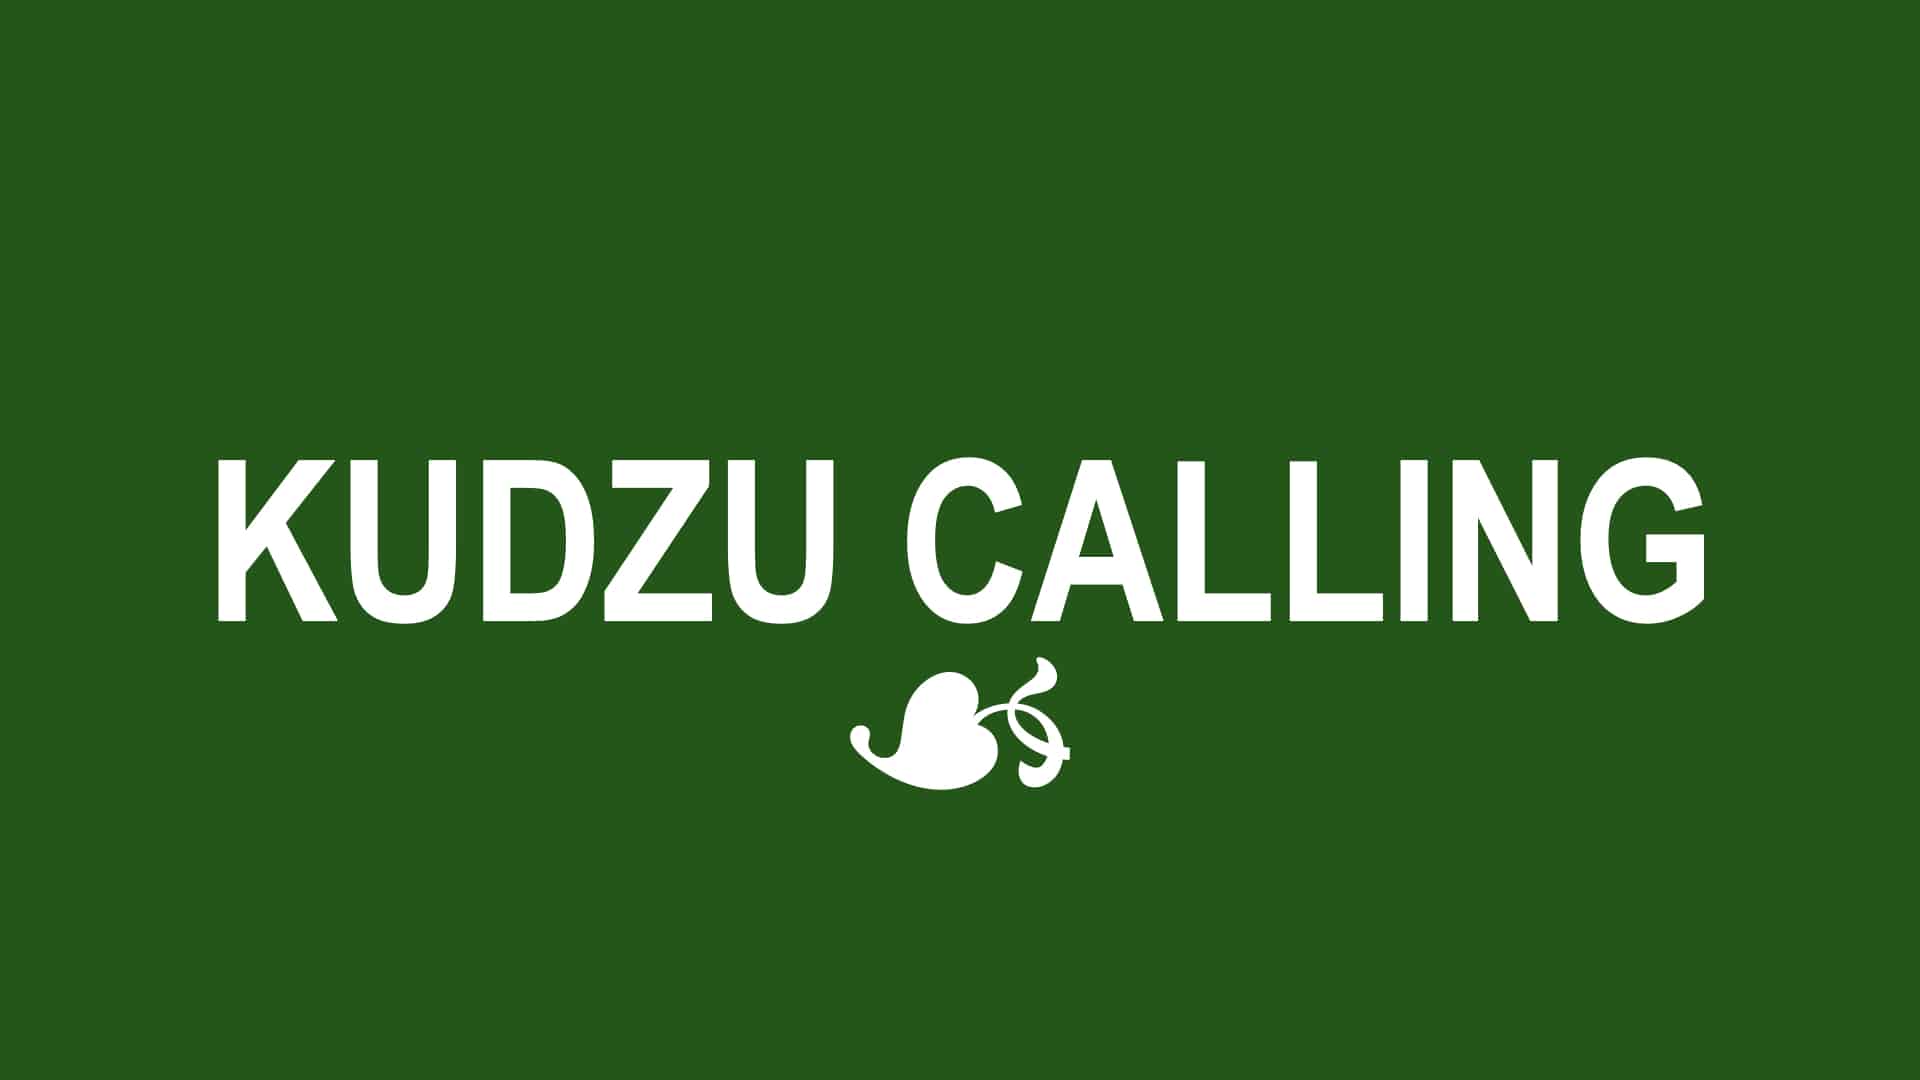 KUDZU CALLING*